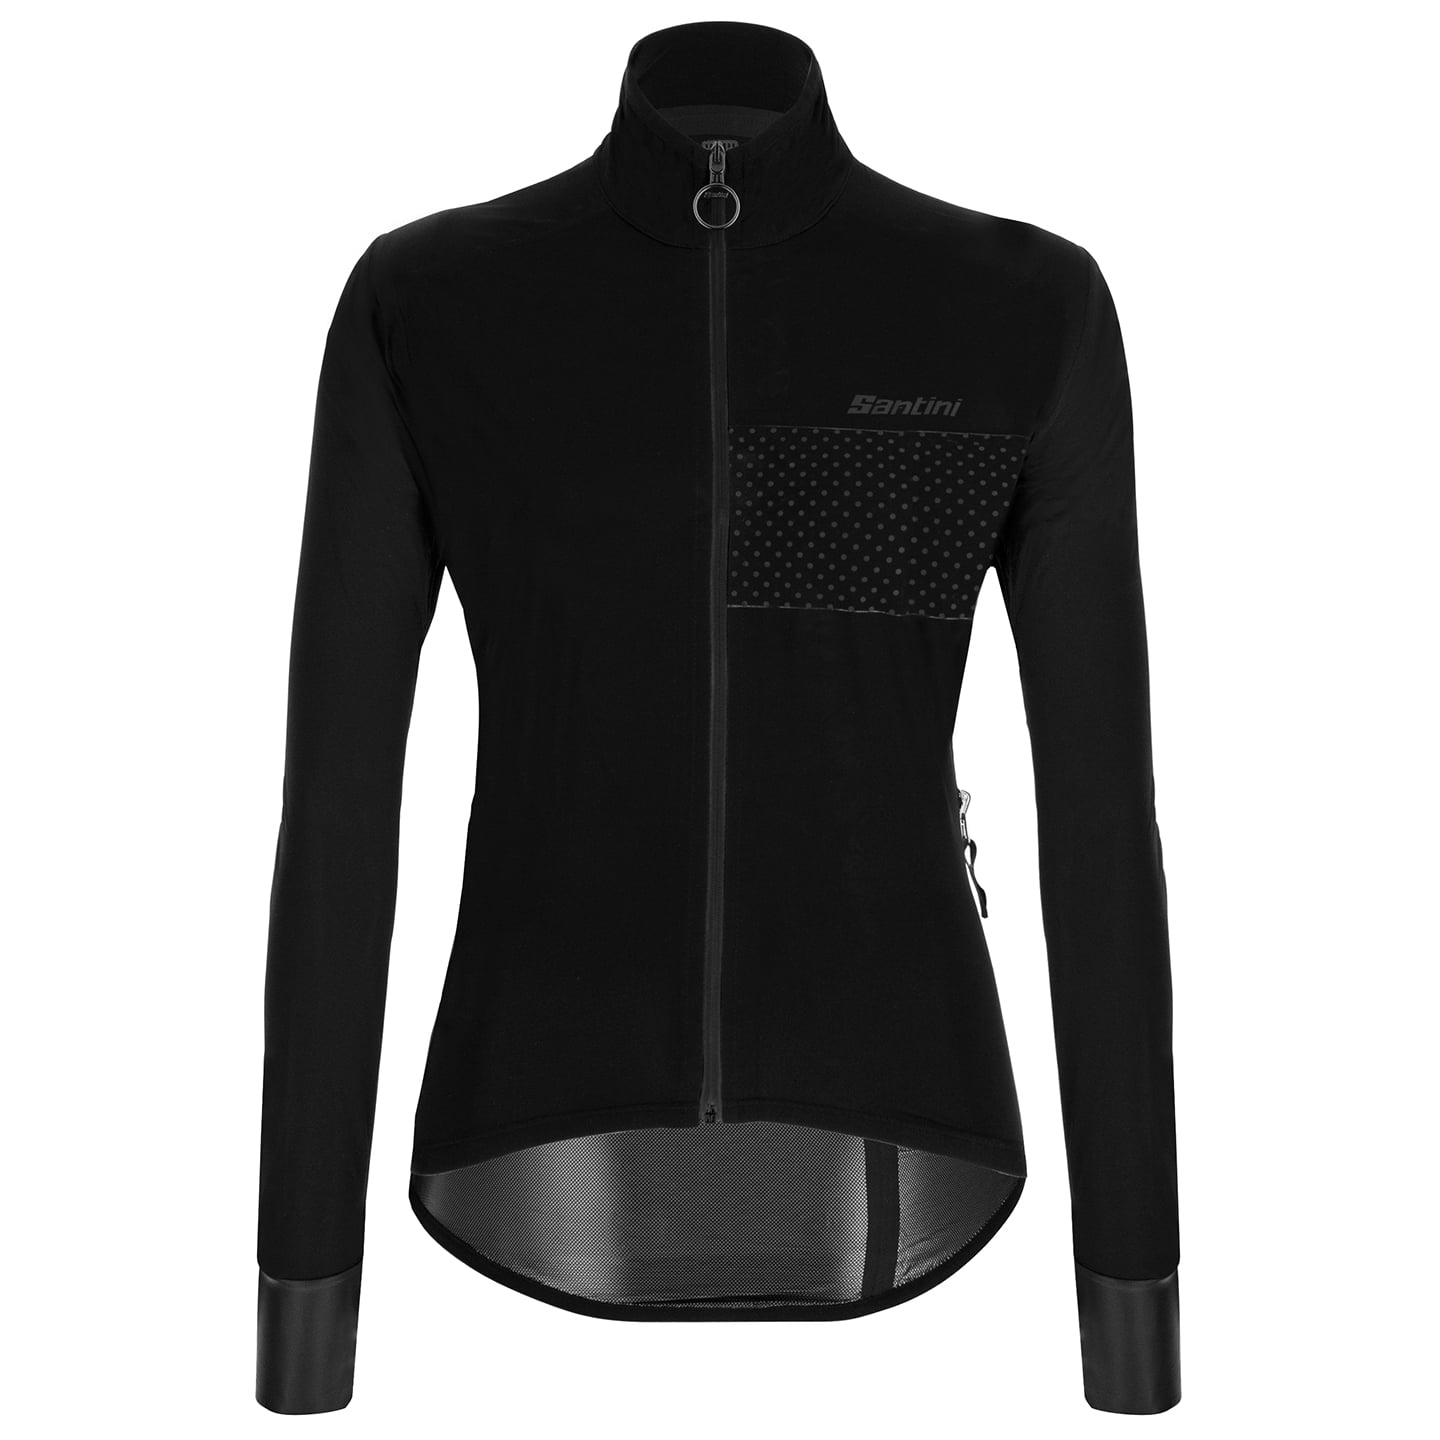 SANTINI Guard Nimbus Waterproof Jacket Women Women’s Waterproof Jacket, size L, Cycle jacket, Cycling clothing